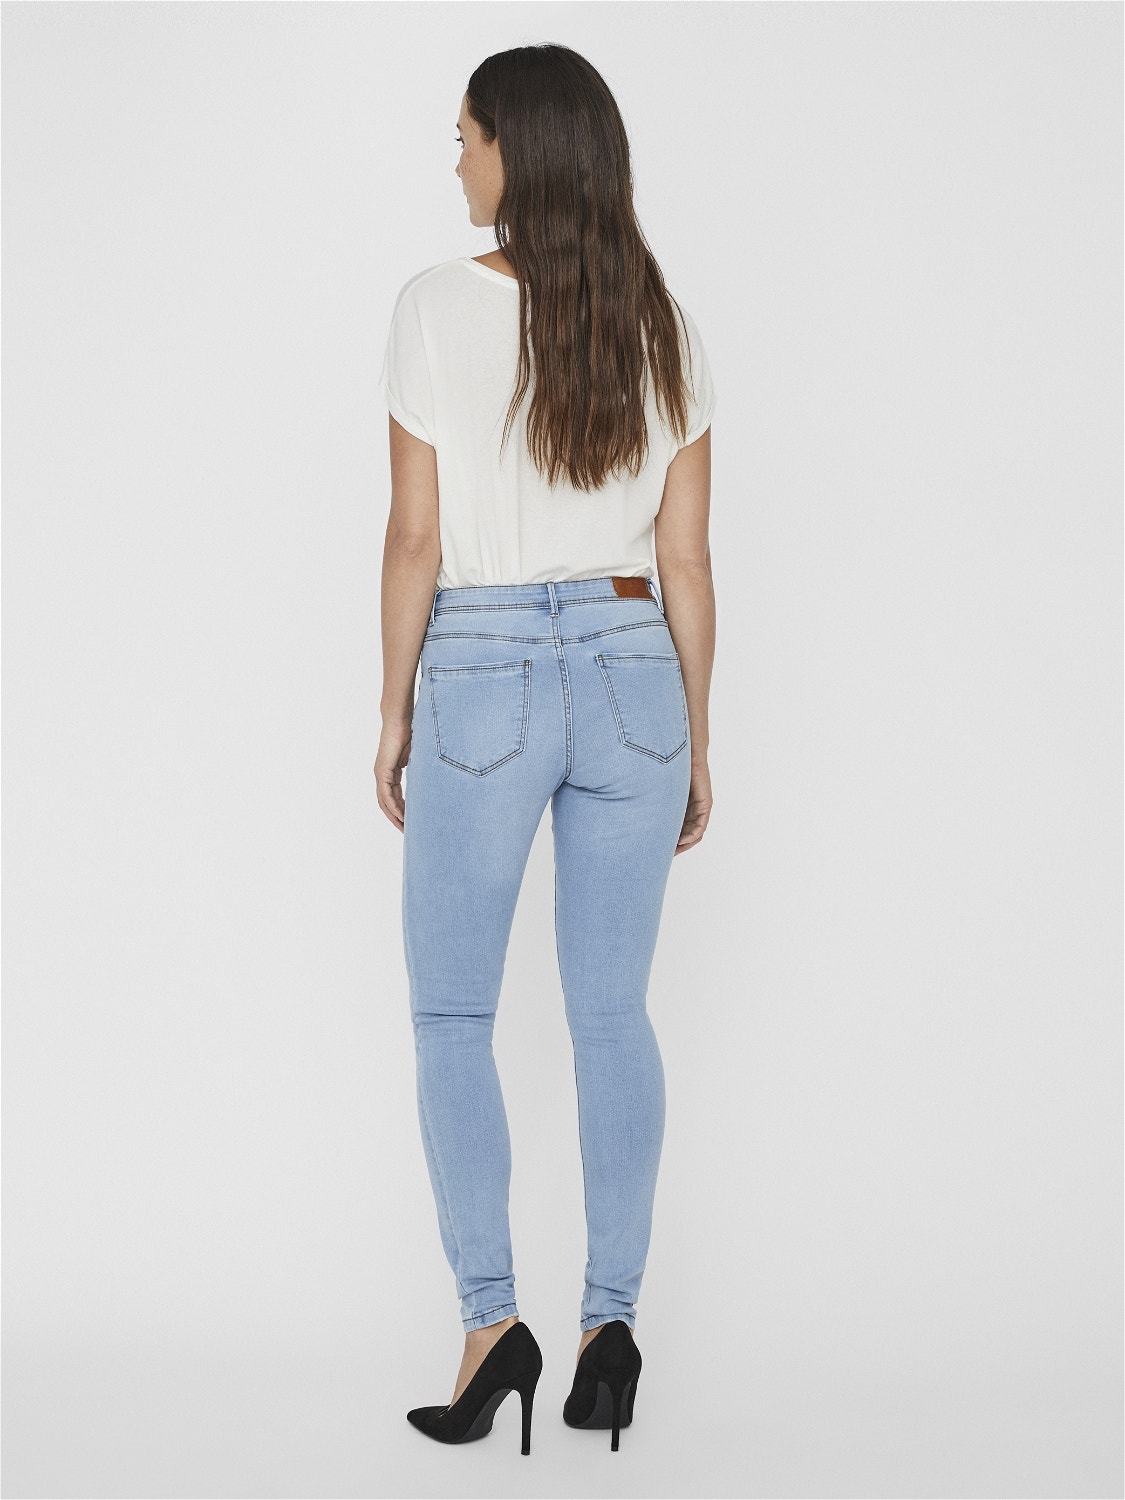 Vero Moda VMTANYA Middels høyt snitt Skinny Fit Jeans -Light Blue Denim - 10225465